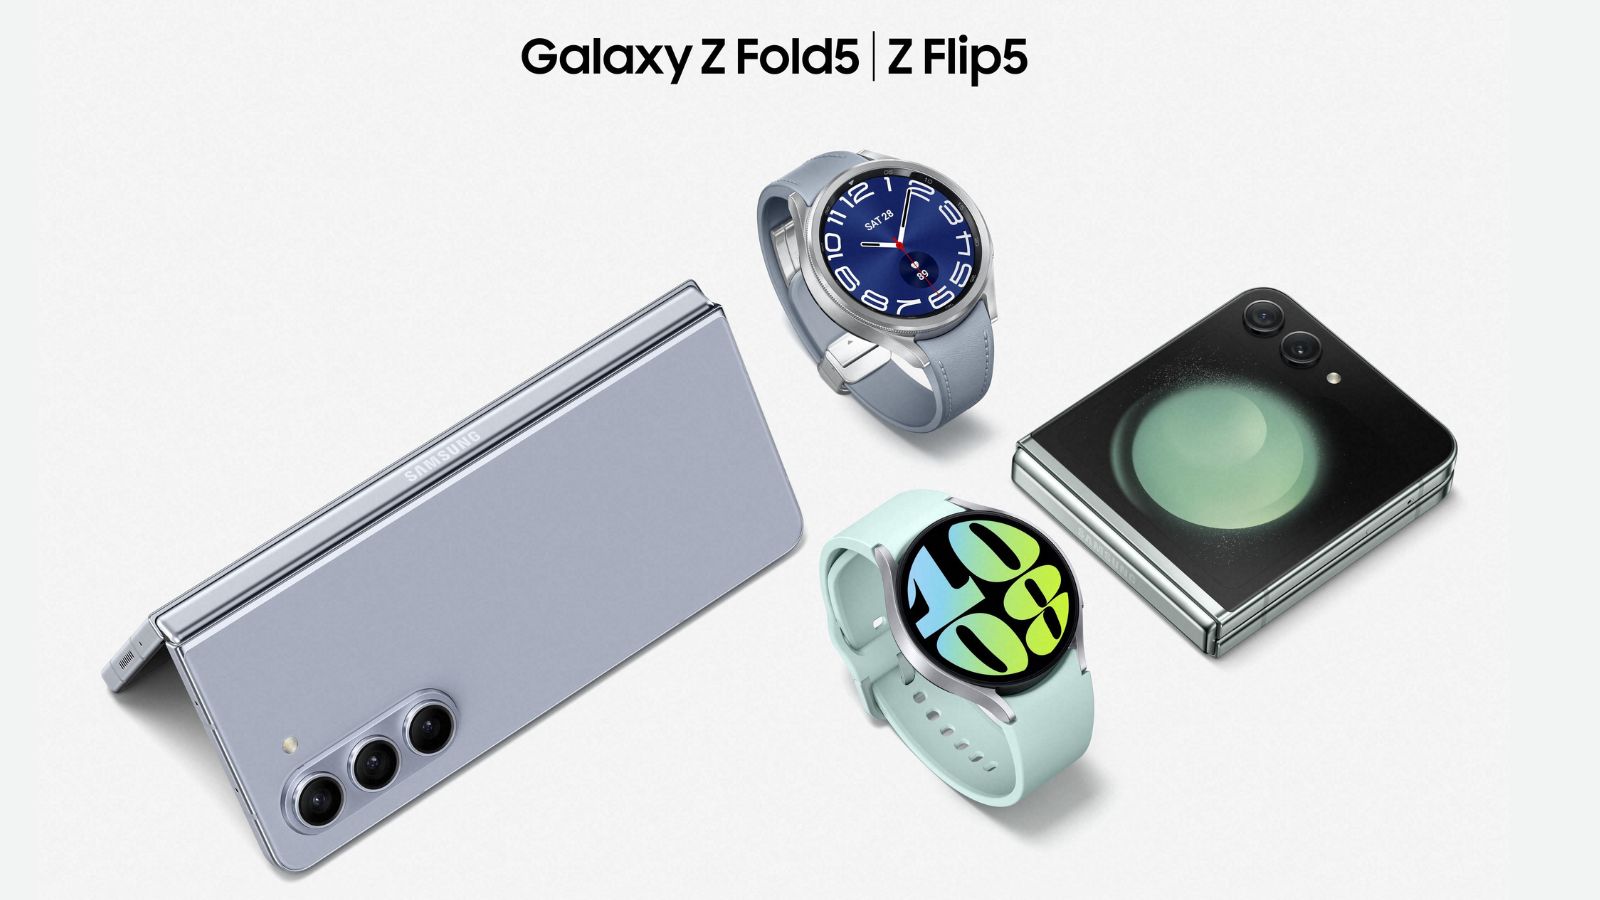 Samsung Galaxy Z Fold5 e Z Flip5 ufficiali, specifiche tecniche e prezzi